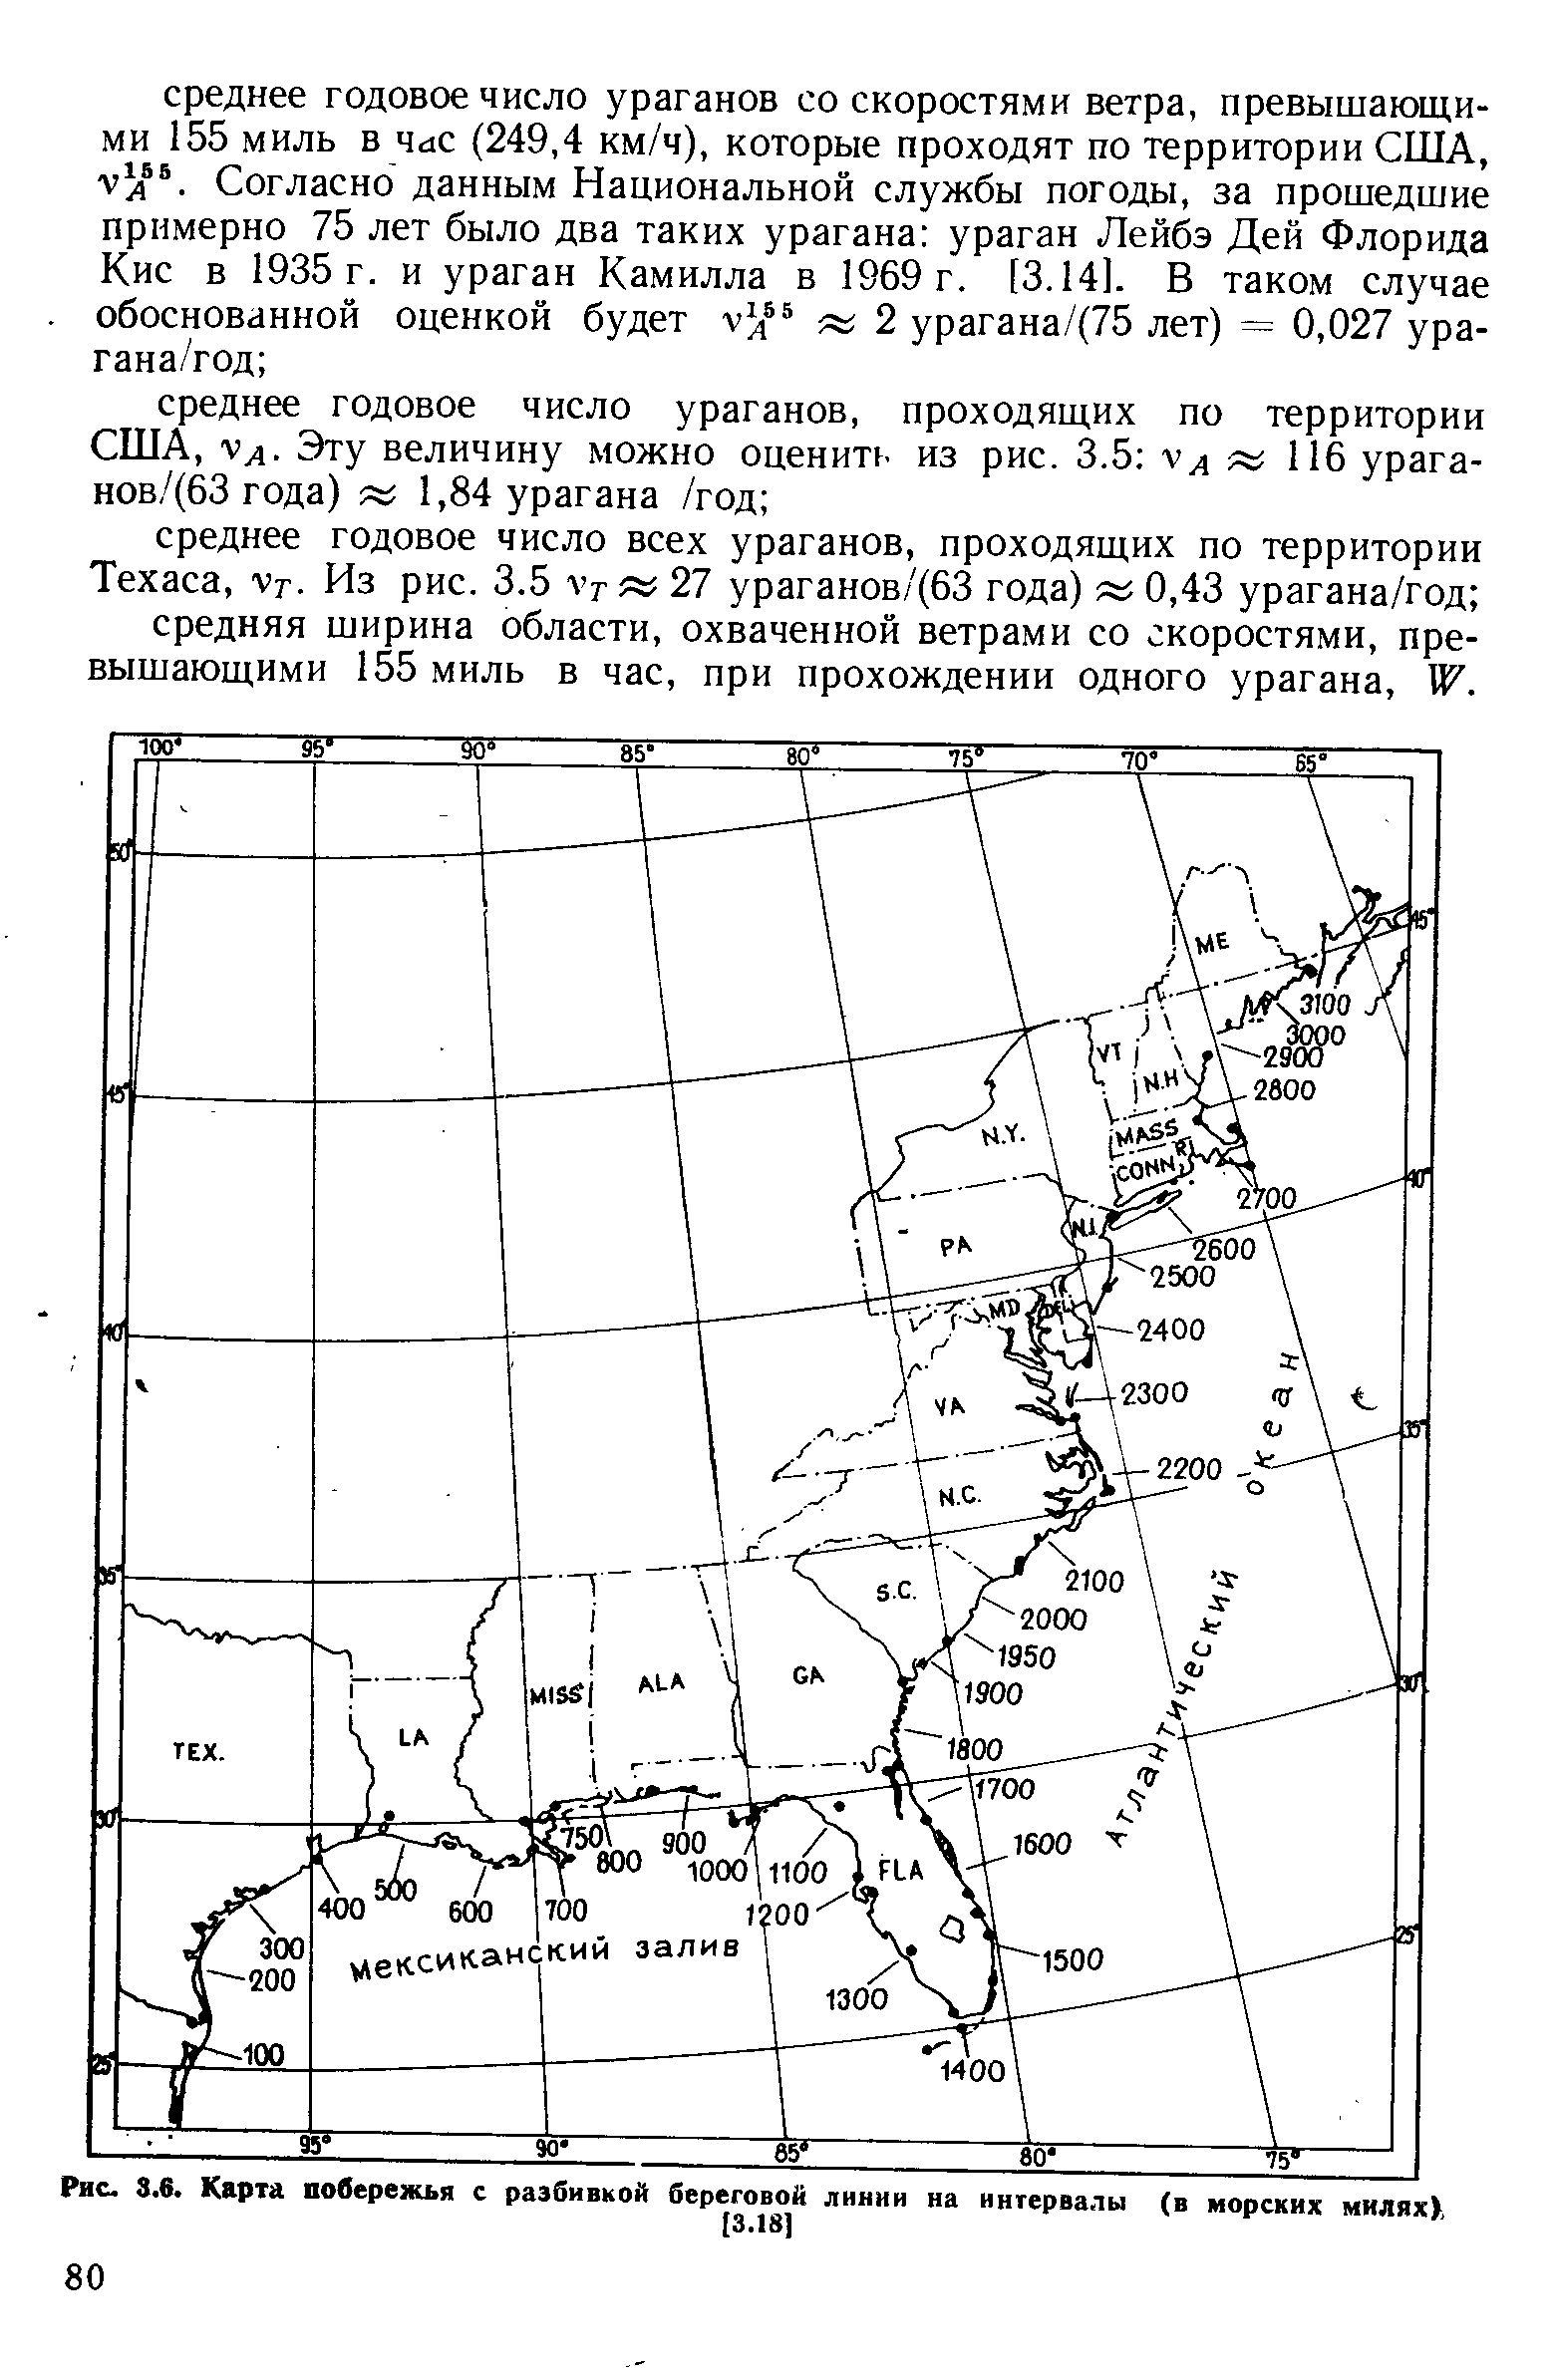 Рис. 3.6. Карта побережья с разбивкой береговой линии на интервалы (в морских милях),
